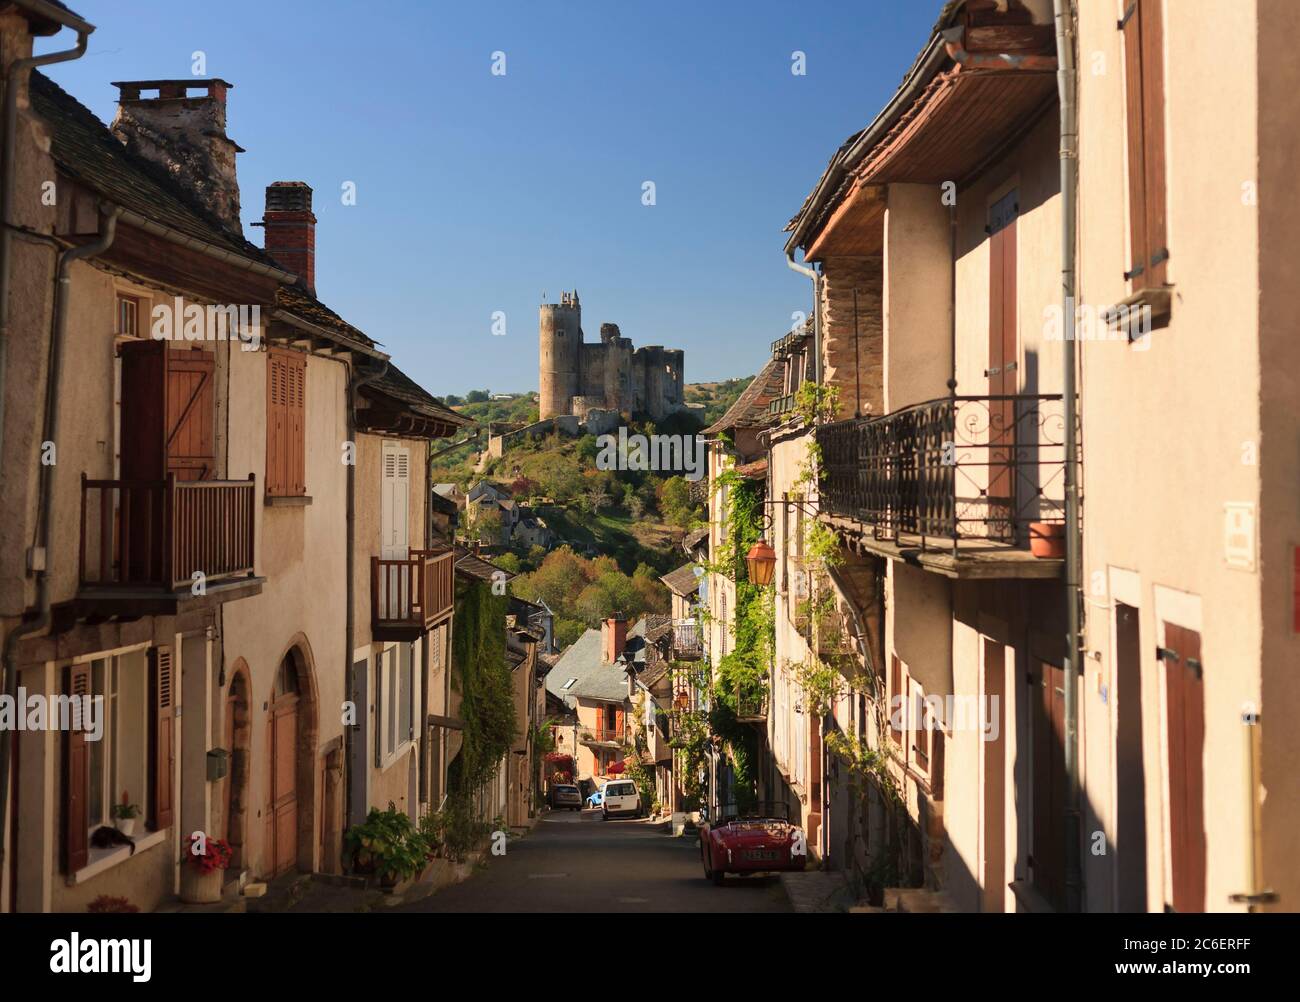 Najac, beschriftet Les Plus Beaux Villages de France, die schönsten Dörfer Frankreichs, mittelalterliches Dorf Aveyron, Frankreich Stockfoto